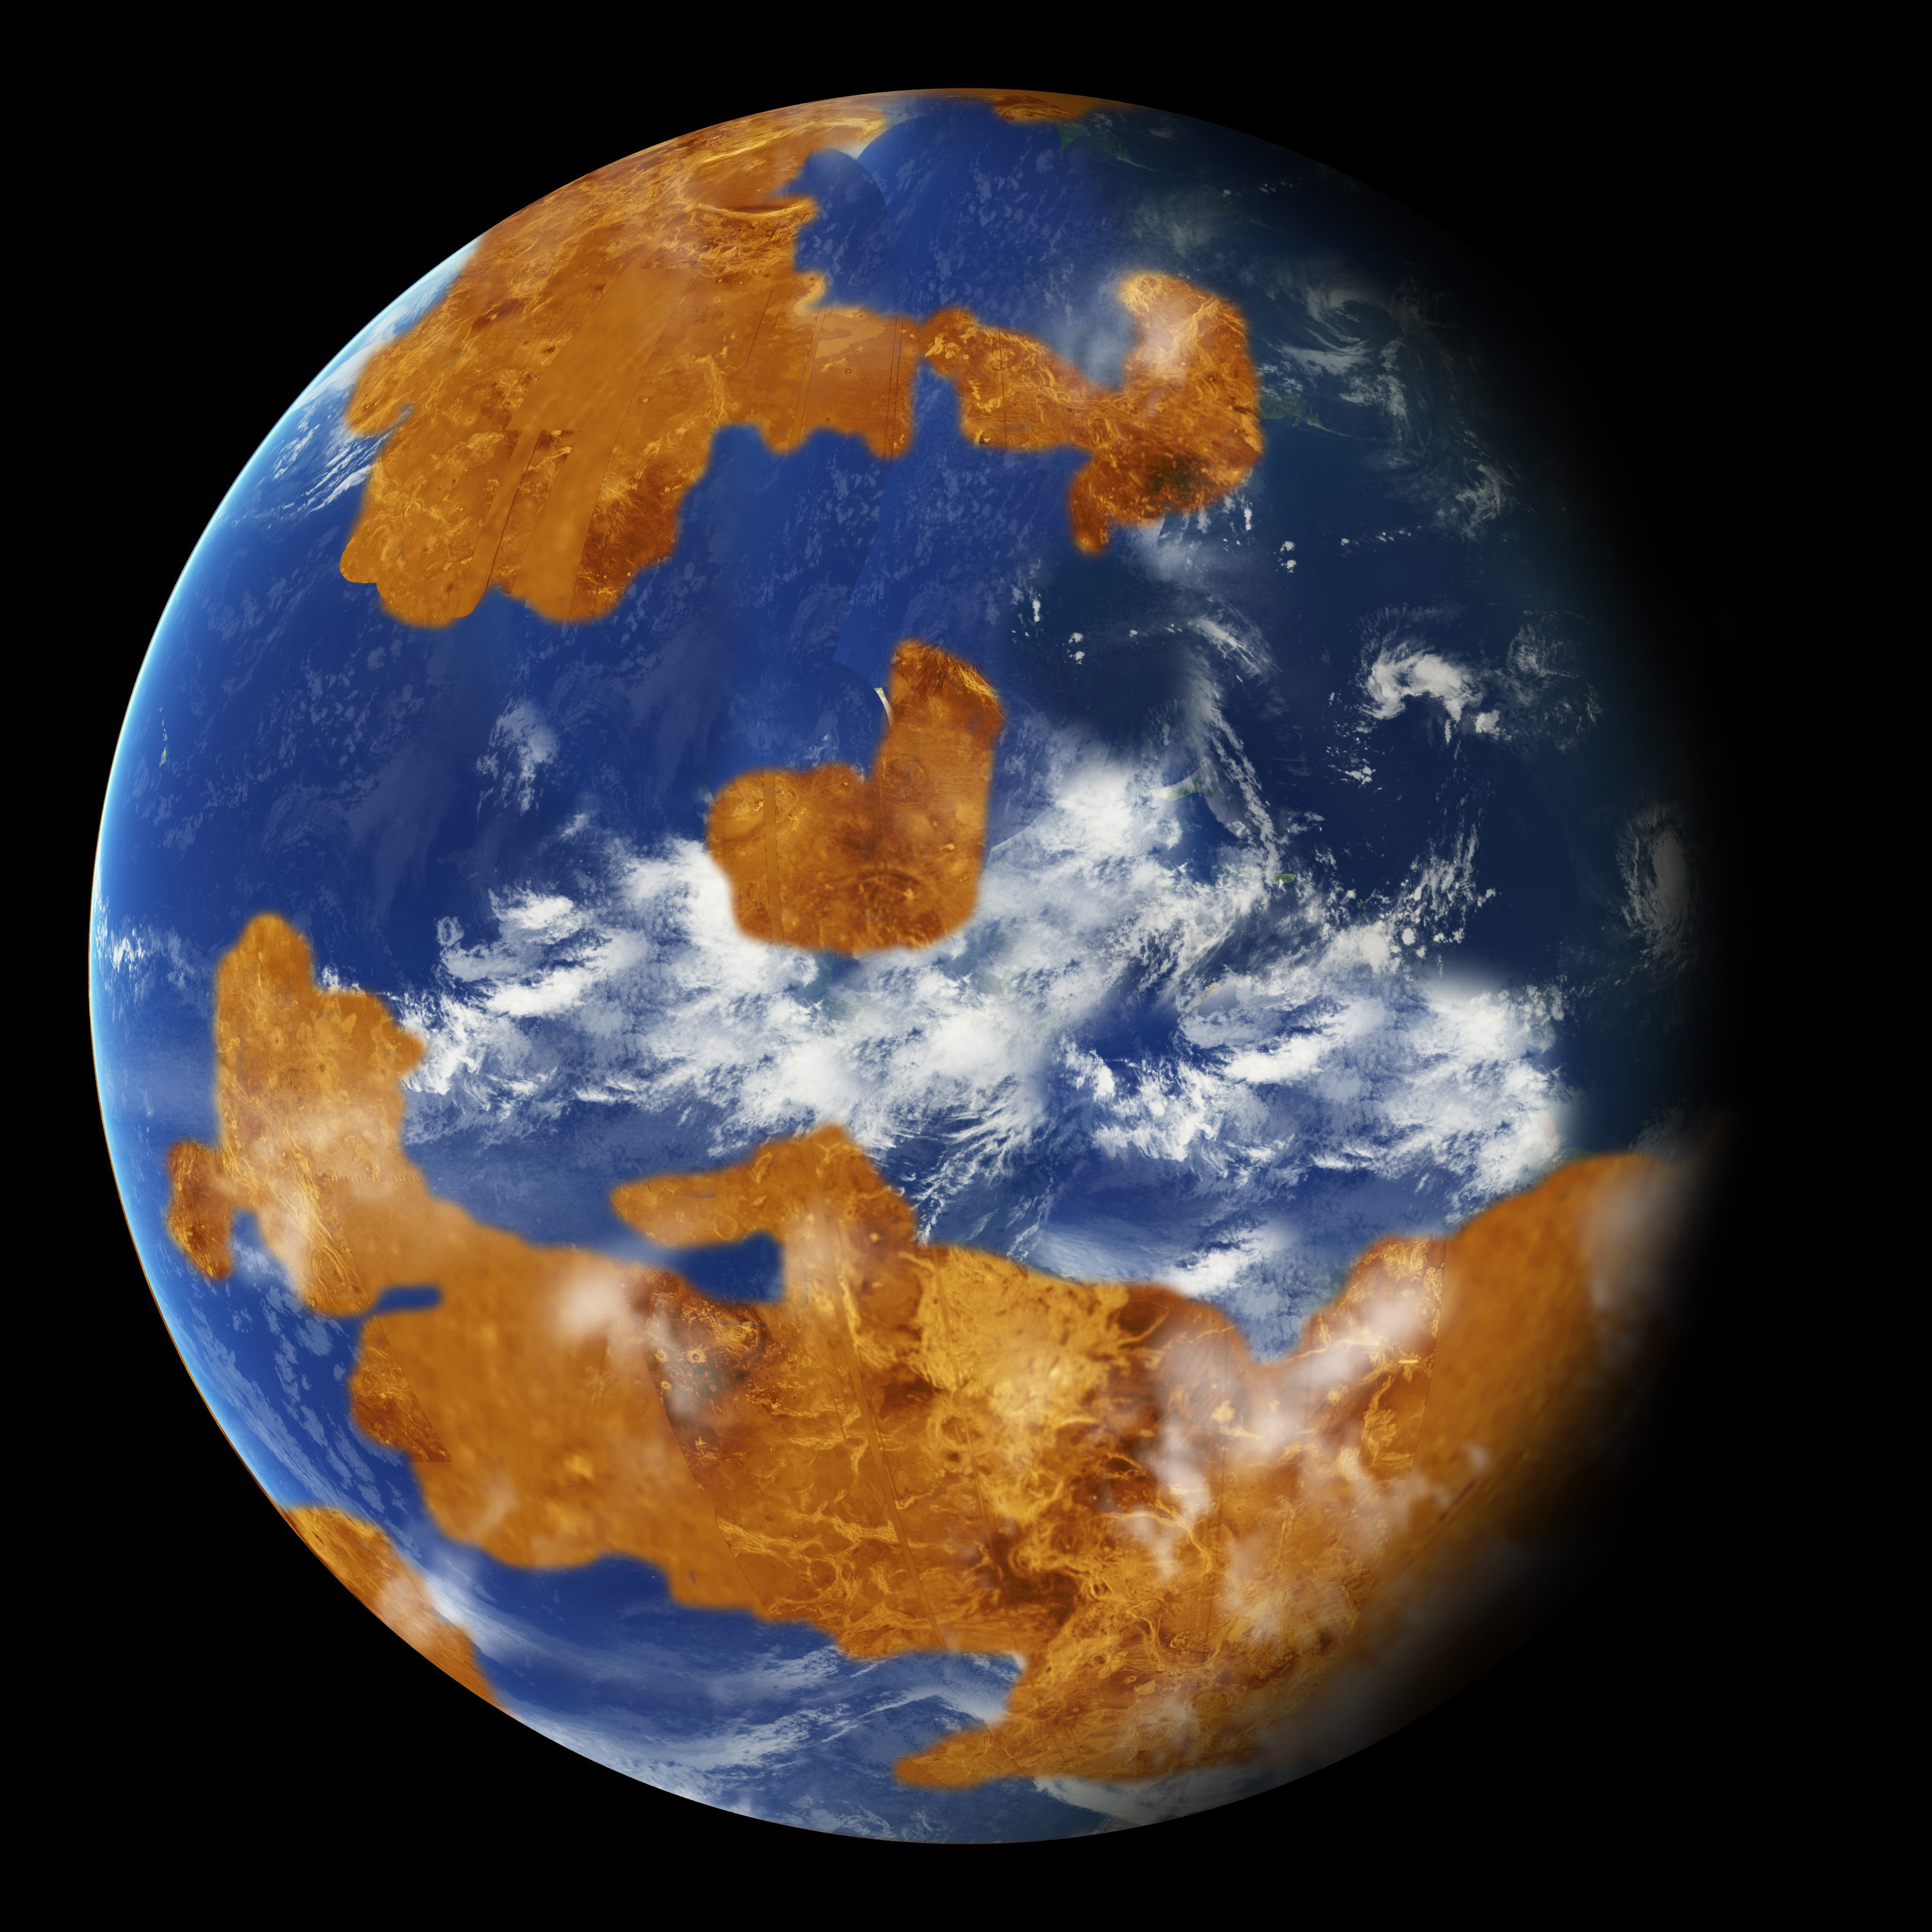 Наблюдения показывают: на Венере, возможно, в далеком прошлом была вода. Шаблон был использован в качестве модели климата на планете, чтобы показать, как грозовые облака могли укрыть древнюю Венеру от сильного солнечного света, что и сделало ее пригодной для жизни. Credits: NASA  